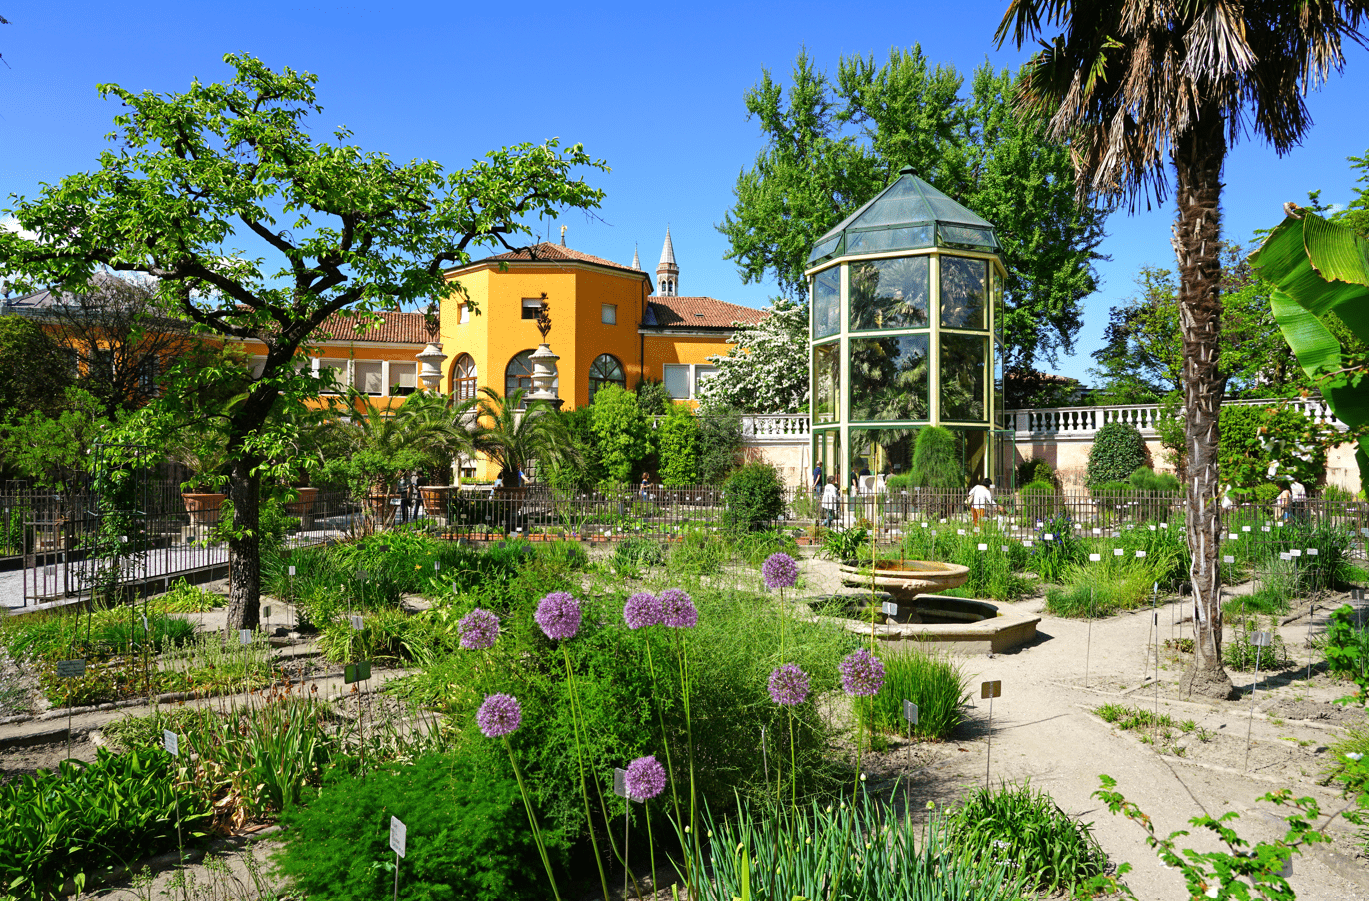 De groene wereld van botanische tuinen - Shaping Europe